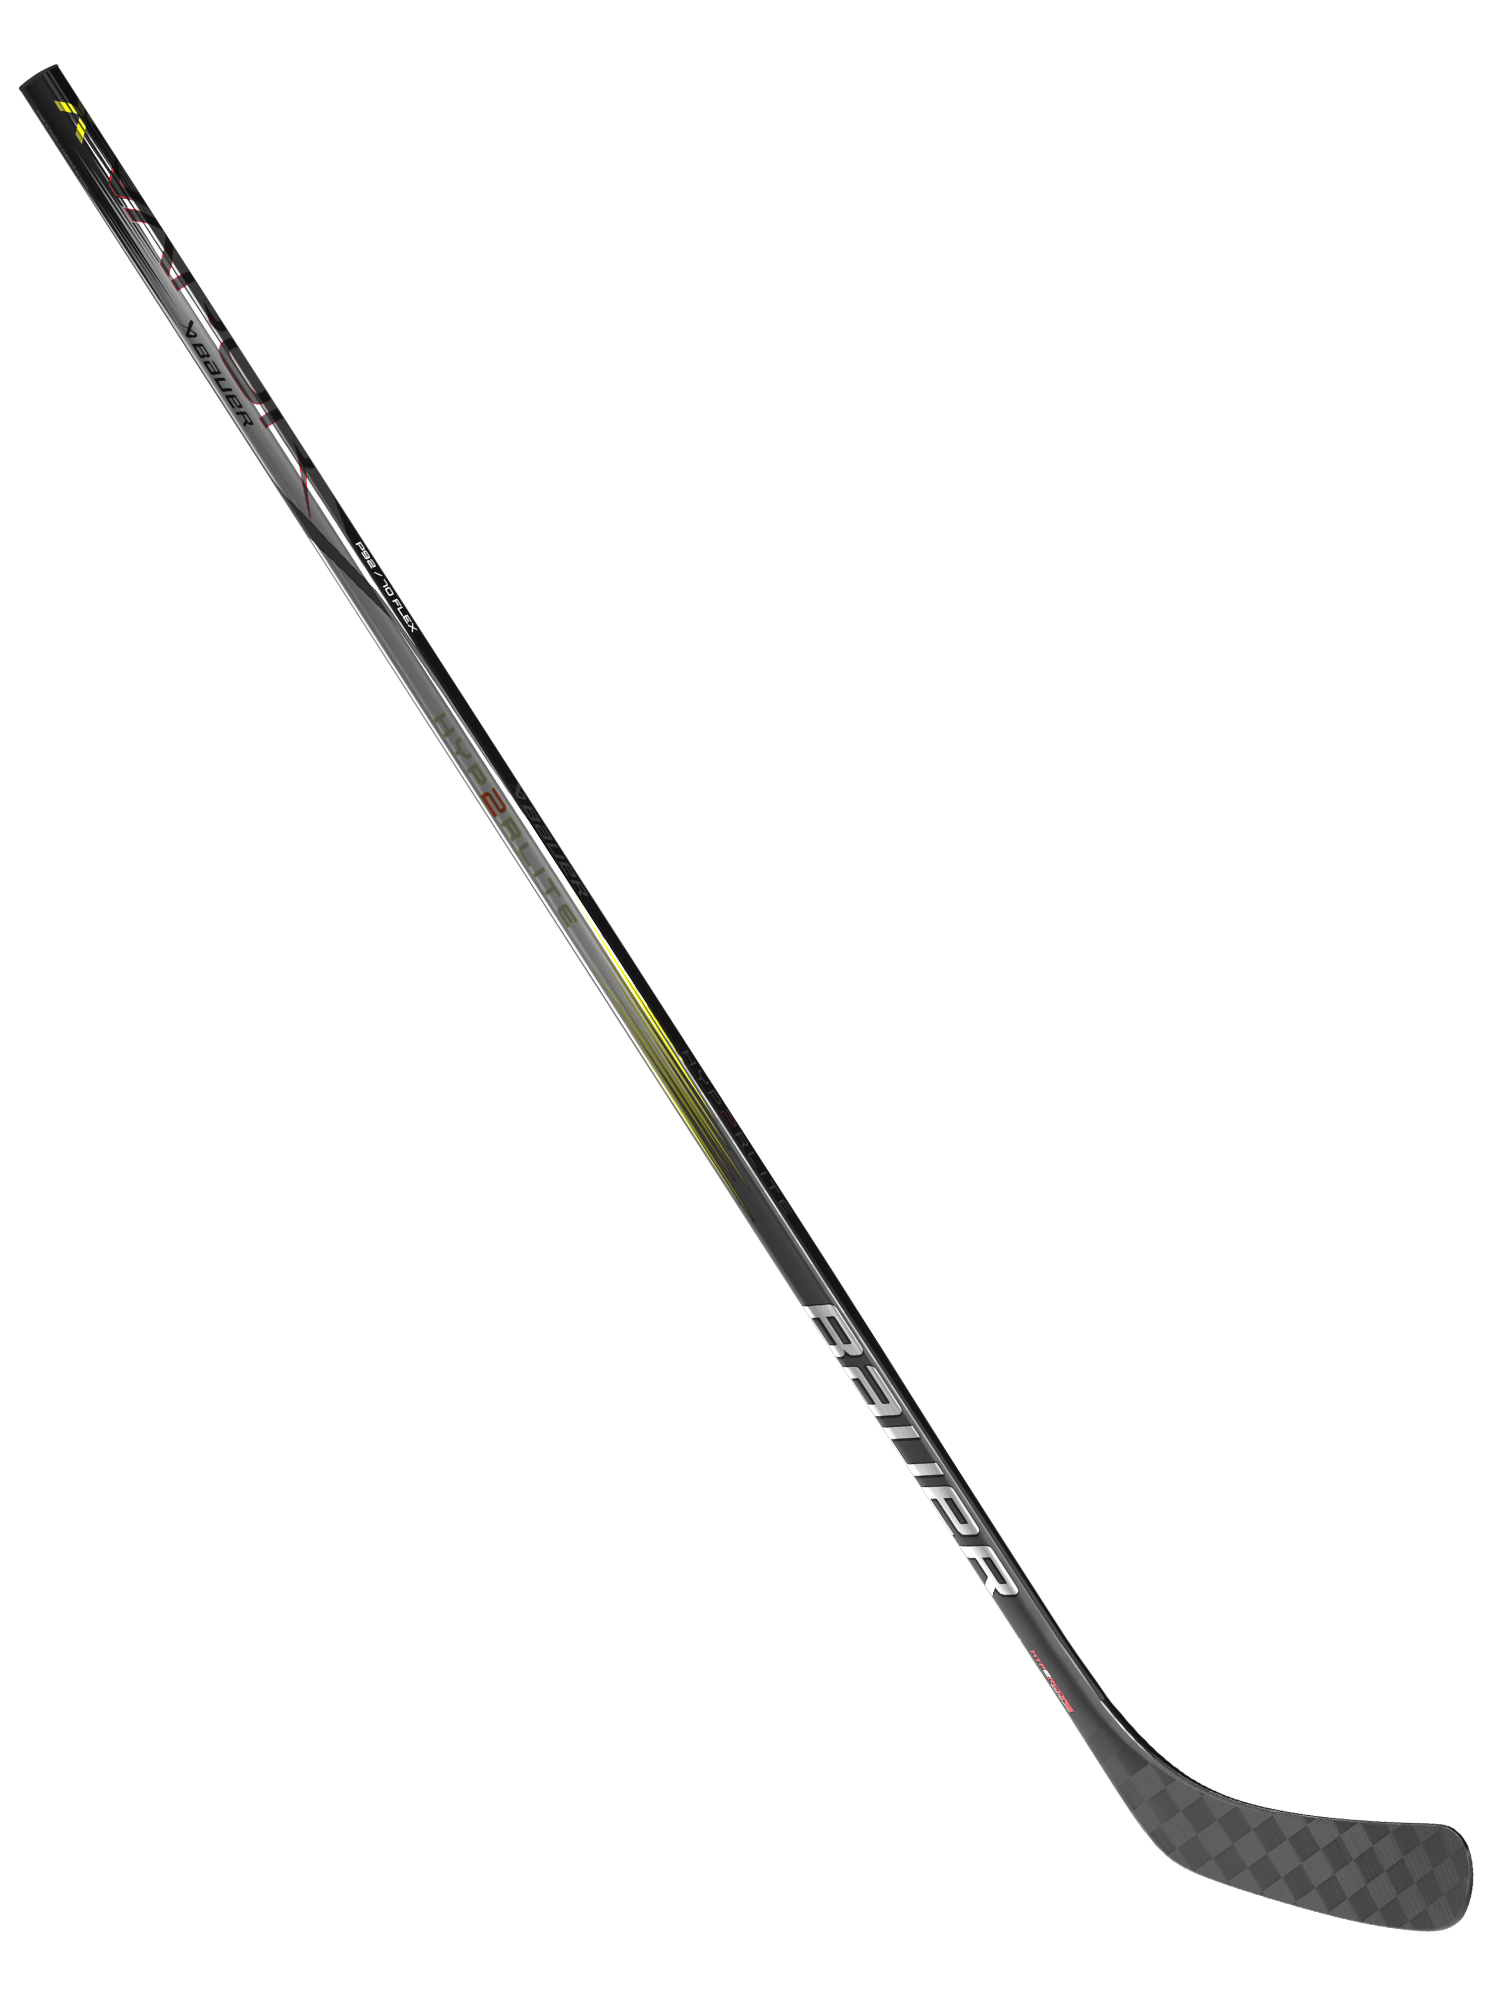 Junior Vapor Hyperlite 2 40 Flex Grip Hockey Stick from Bauer